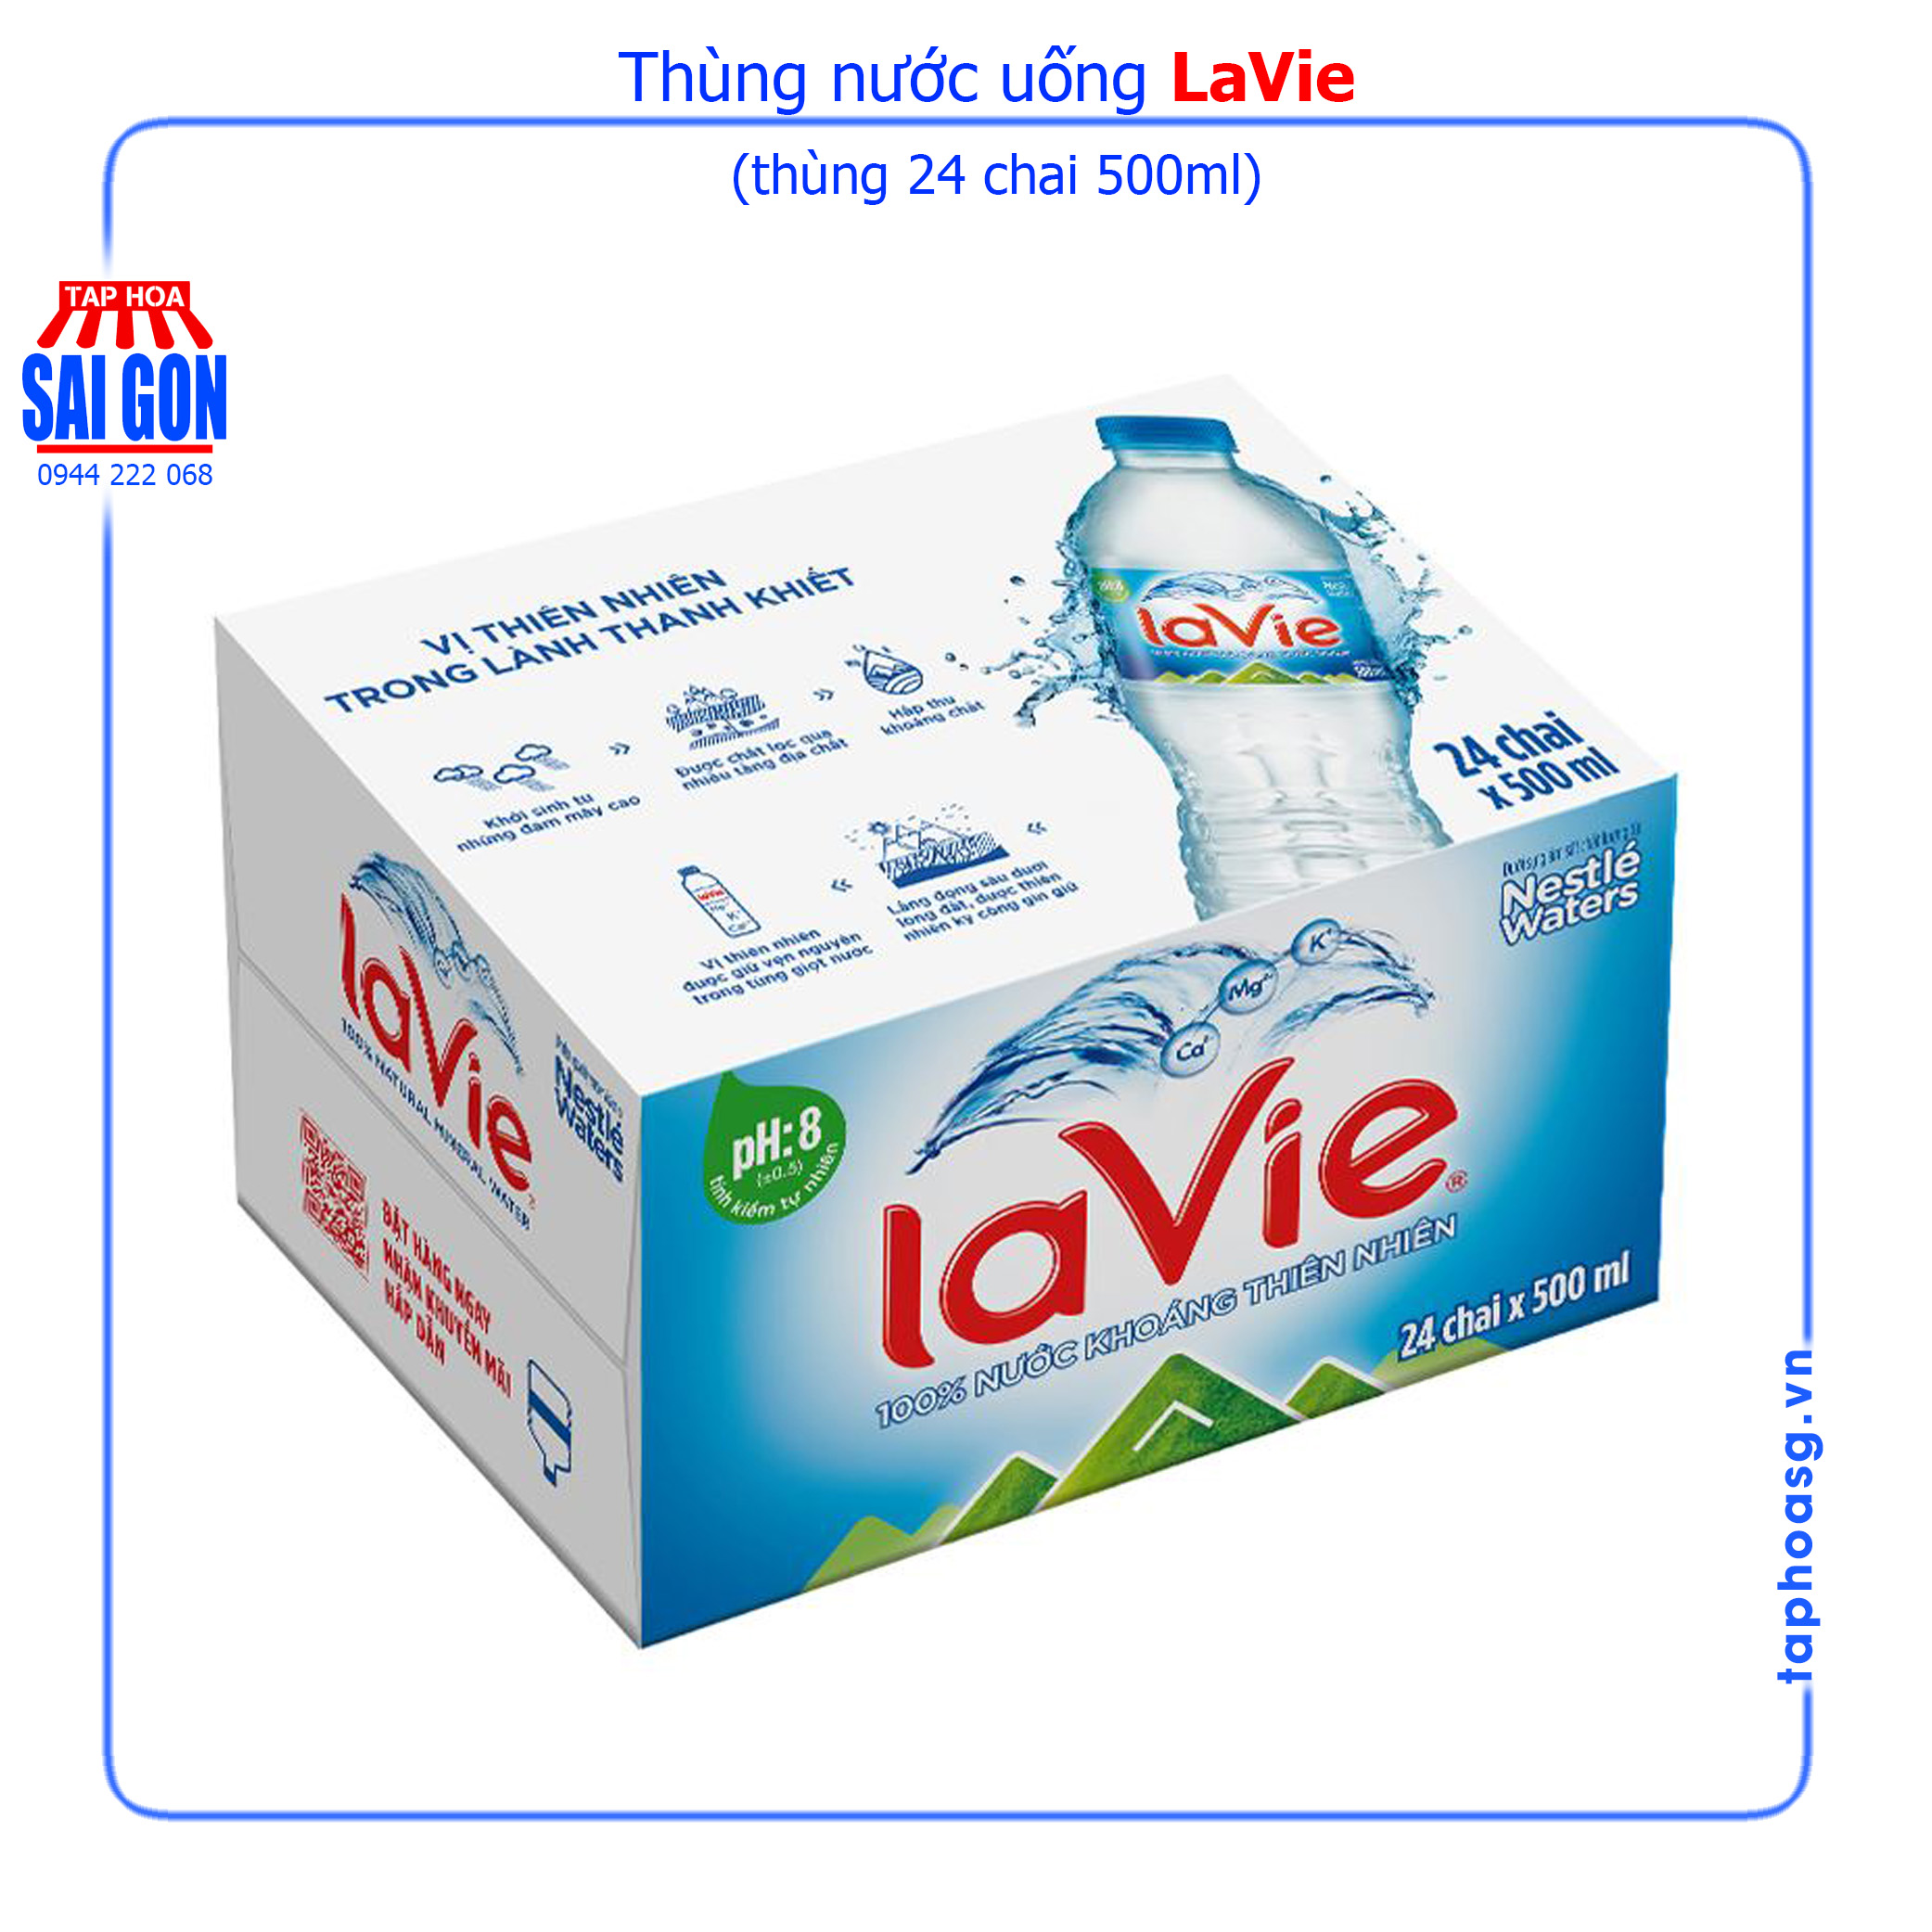 Thùng nước uống Lavie 24 chai 500ml cung cấp nguồn nước đảm bảo cho các